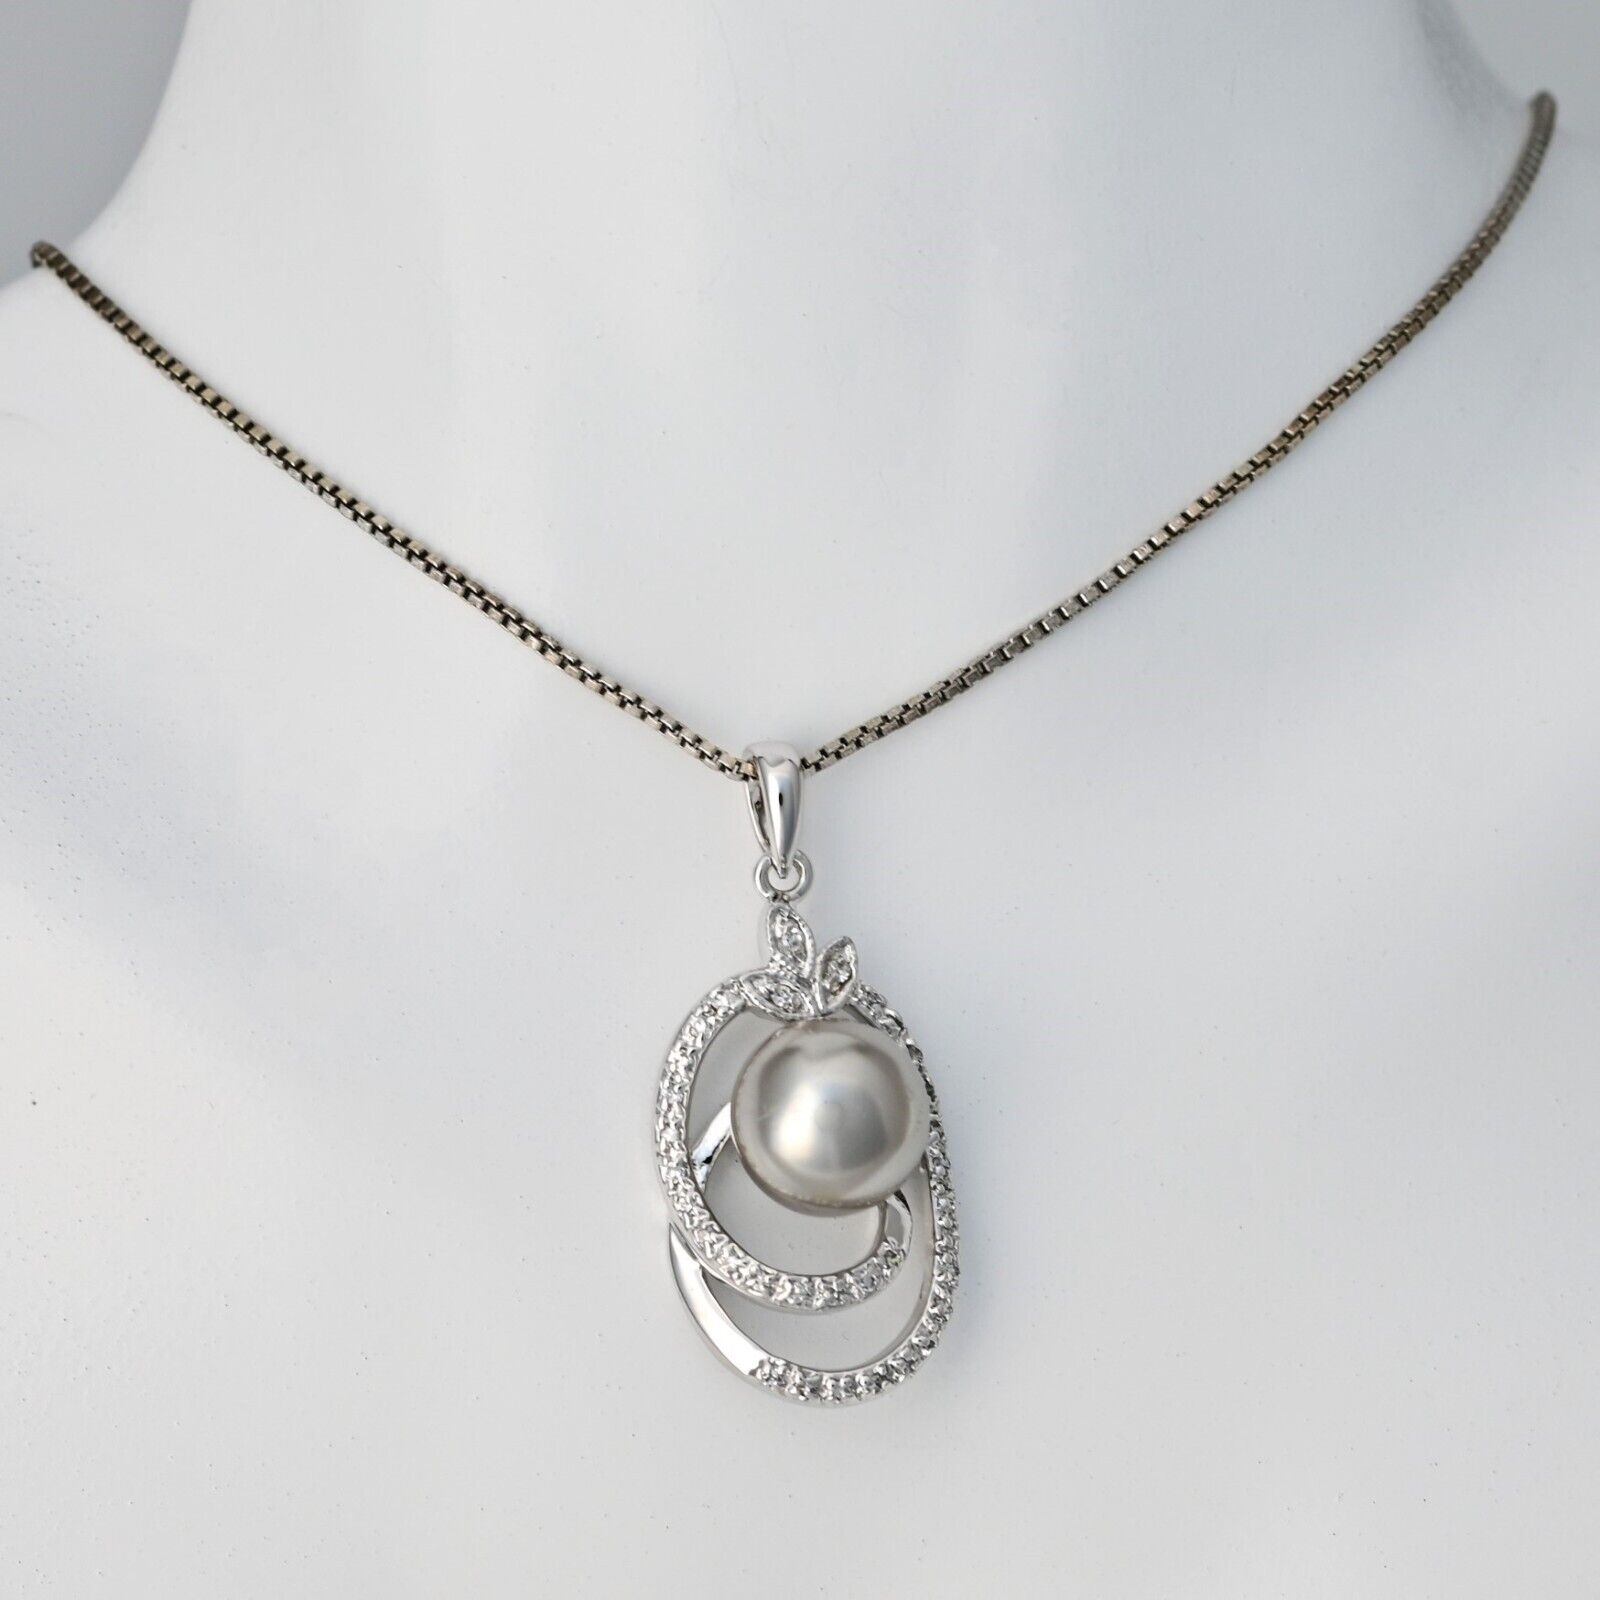 Vintage Original 925 Sterling Silver Black Tahitian Ocean Pearl Pendant Necklace